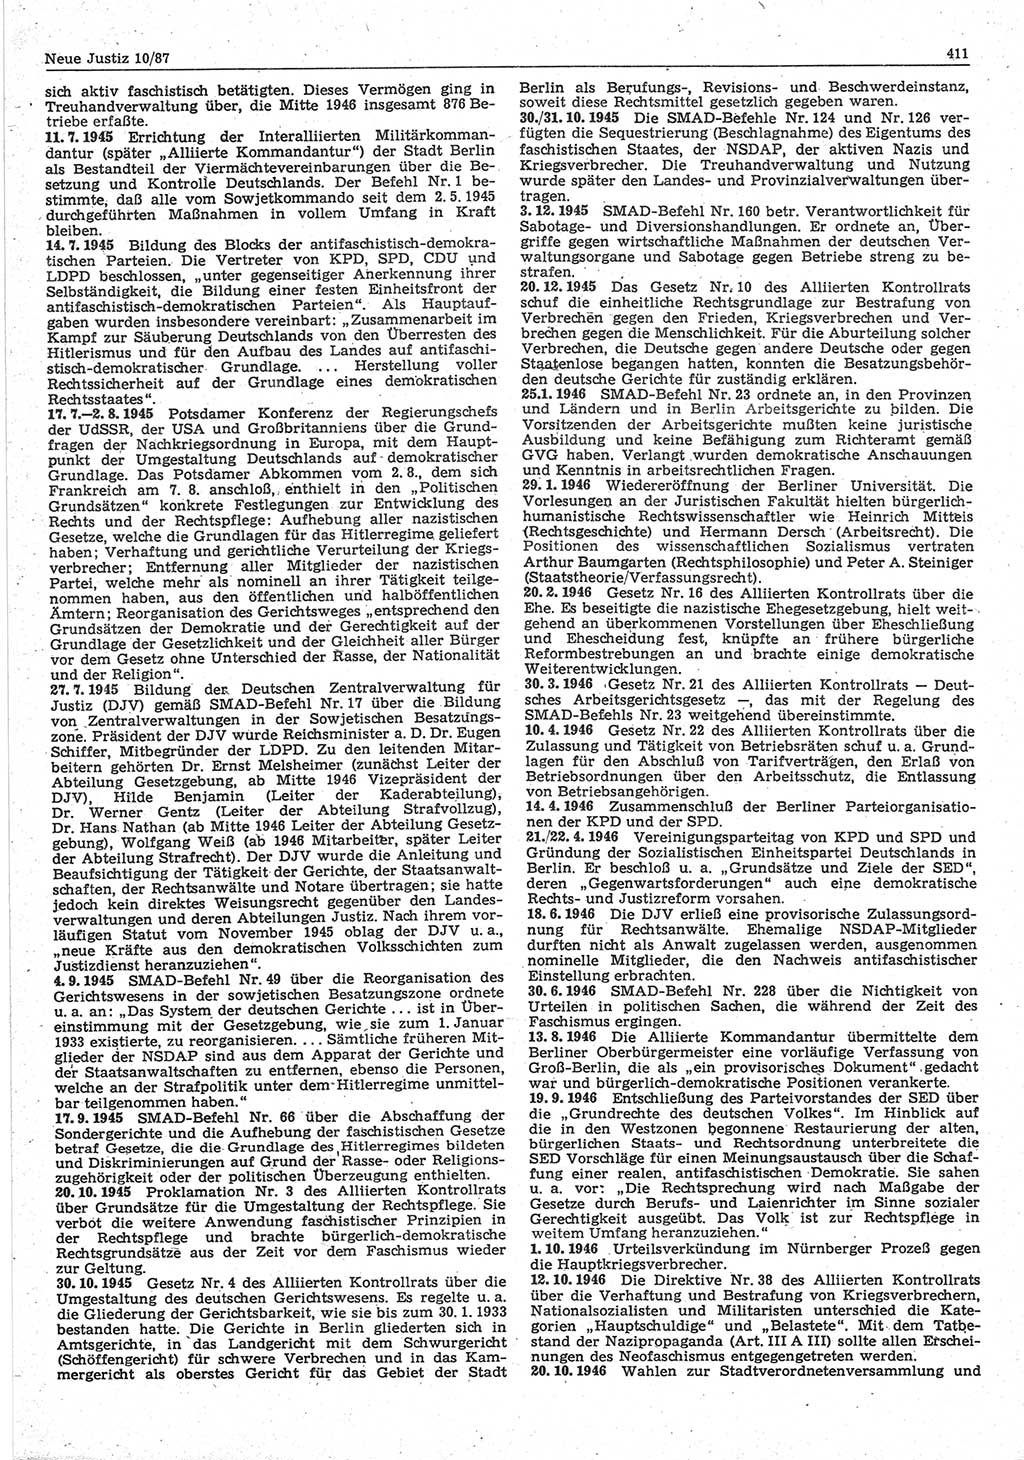 Neue Justiz (NJ), Zeitschrift für sozialistisches Recht und Gesetzlichkeit [Deutsche Demokratische Republik (DDR)], 41. Jahrgang 1987, Seite 411 (NJ DDR 1987, S. 411)